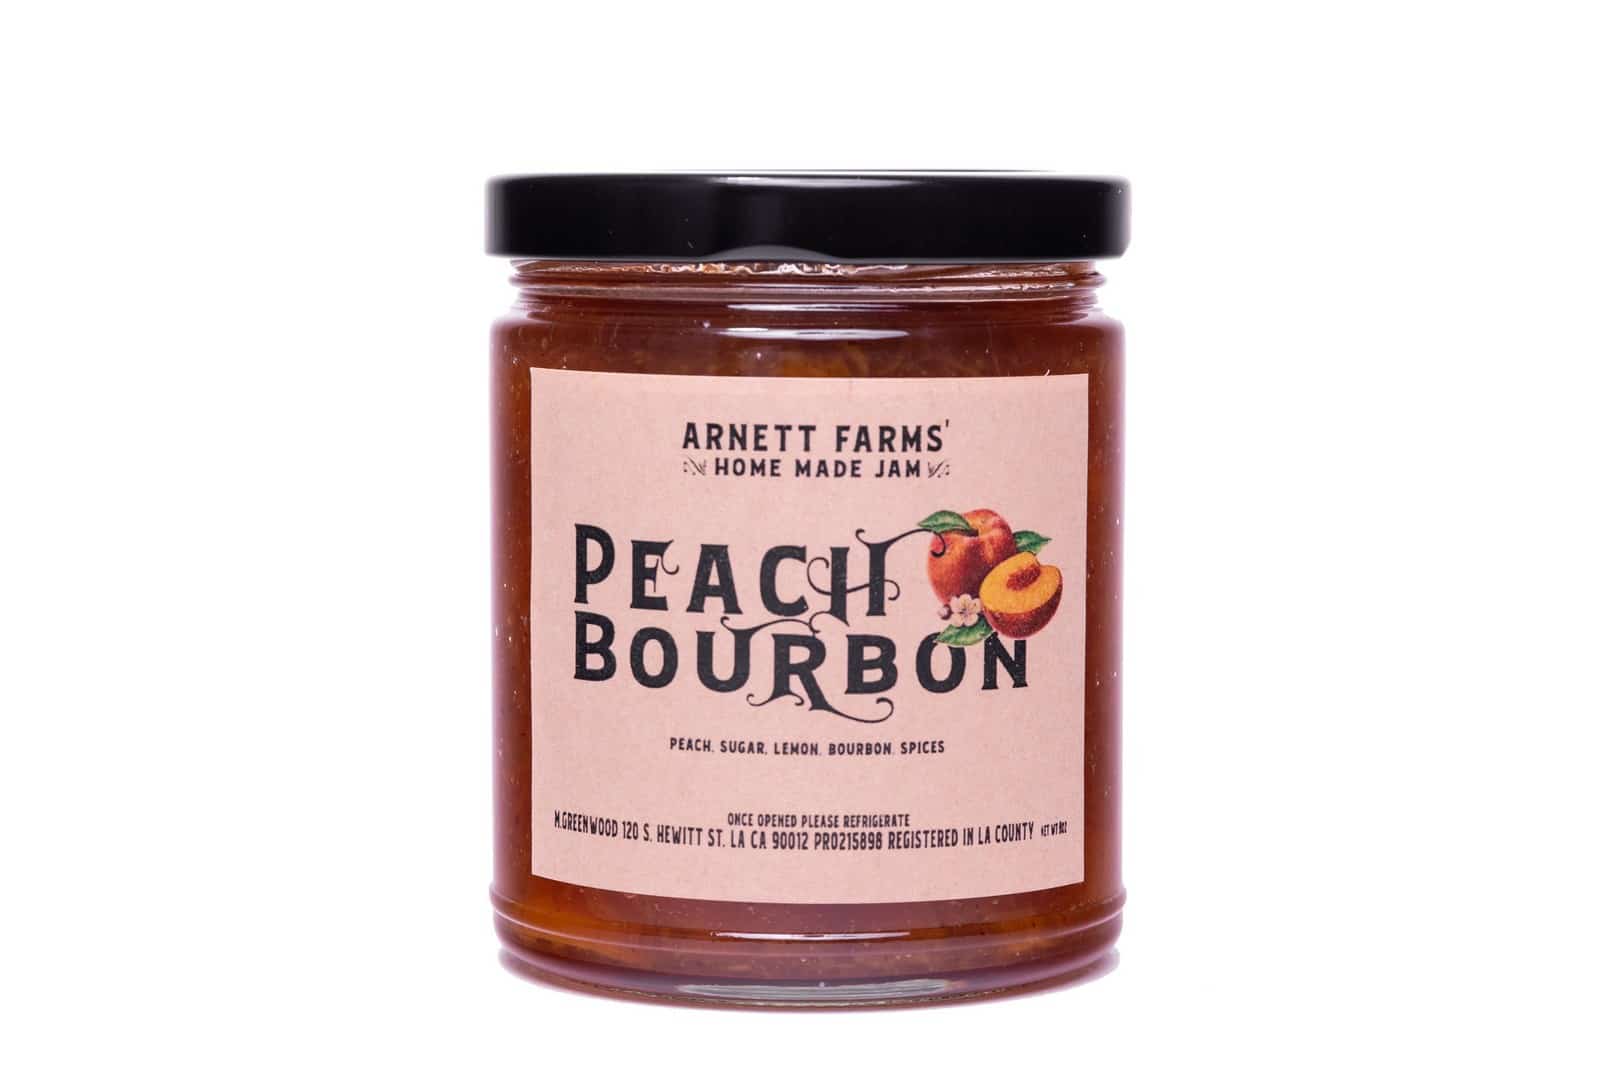 Peach Bourbon Jam - Arnett Farms